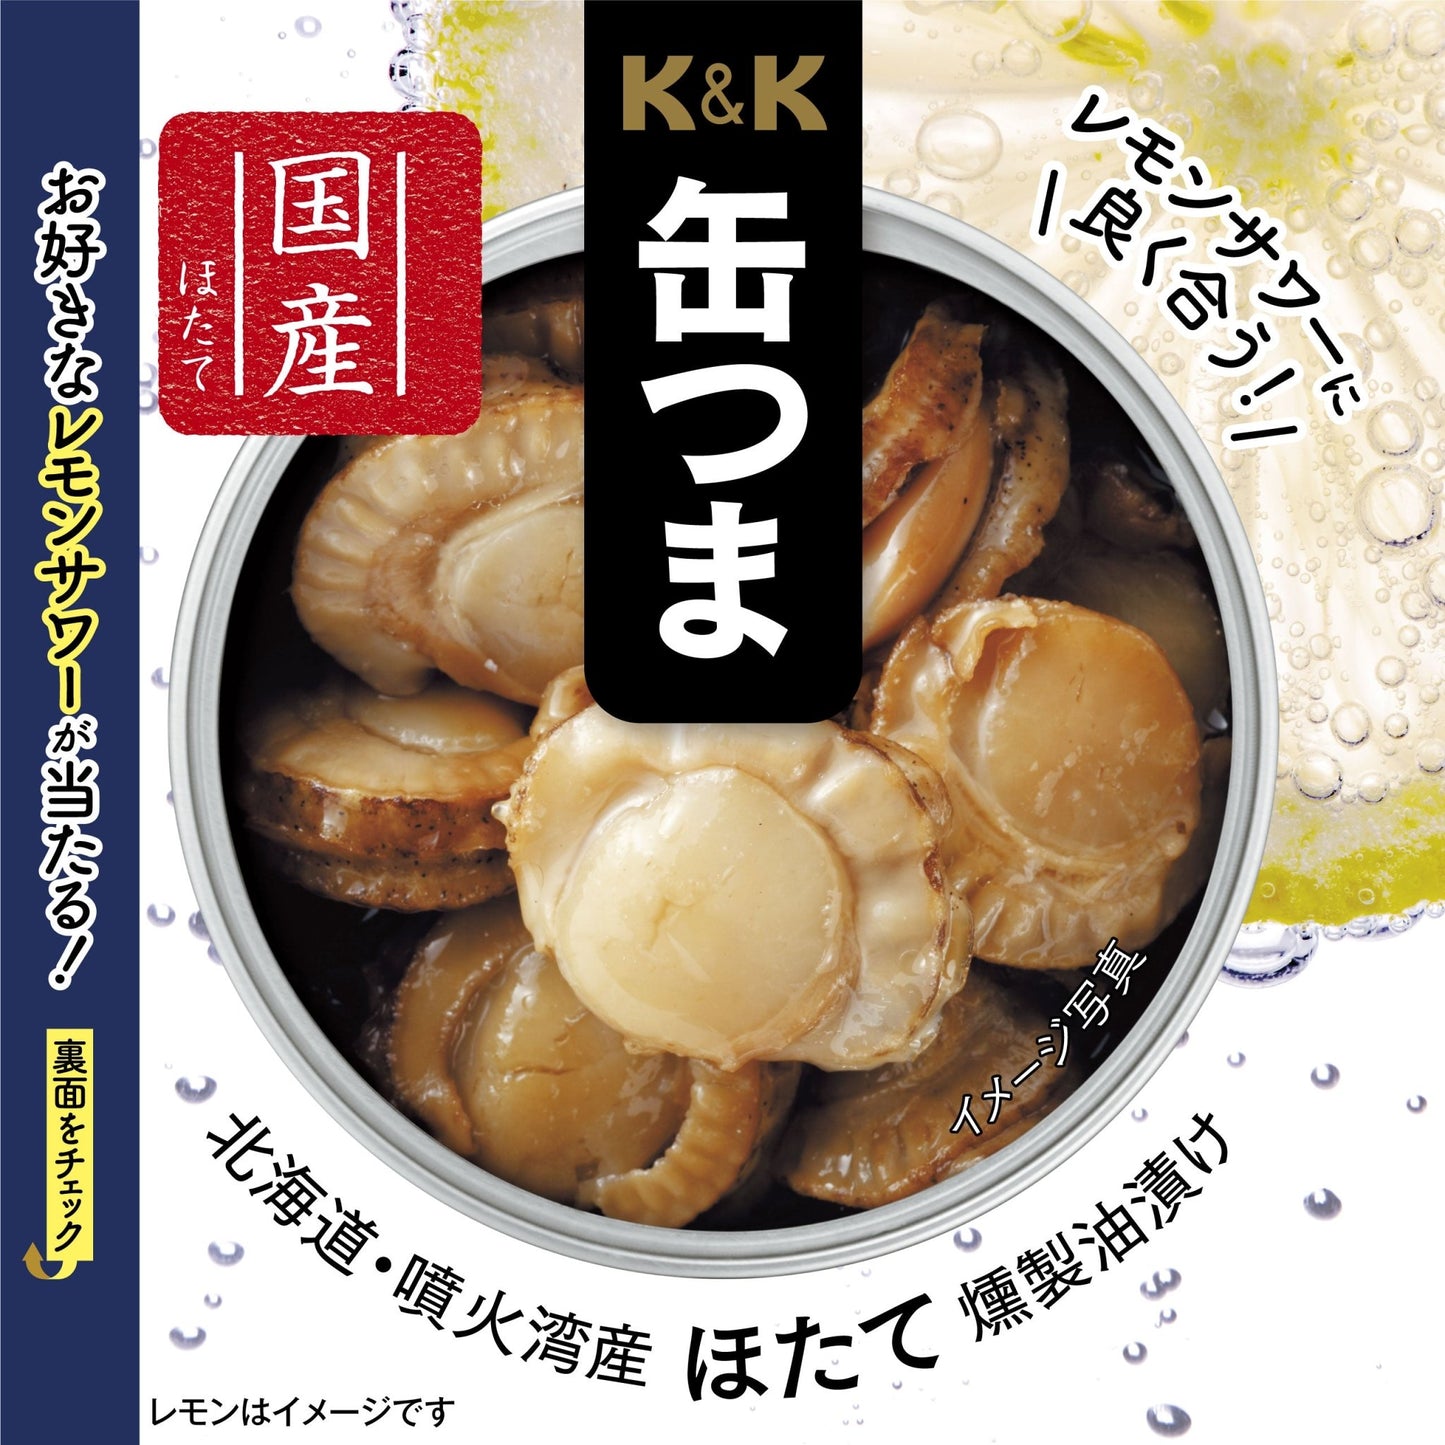 【セール品】K&K 缶つま 北海道噴火湾産ほたて燻製油漬け（期間限定パッケージ）